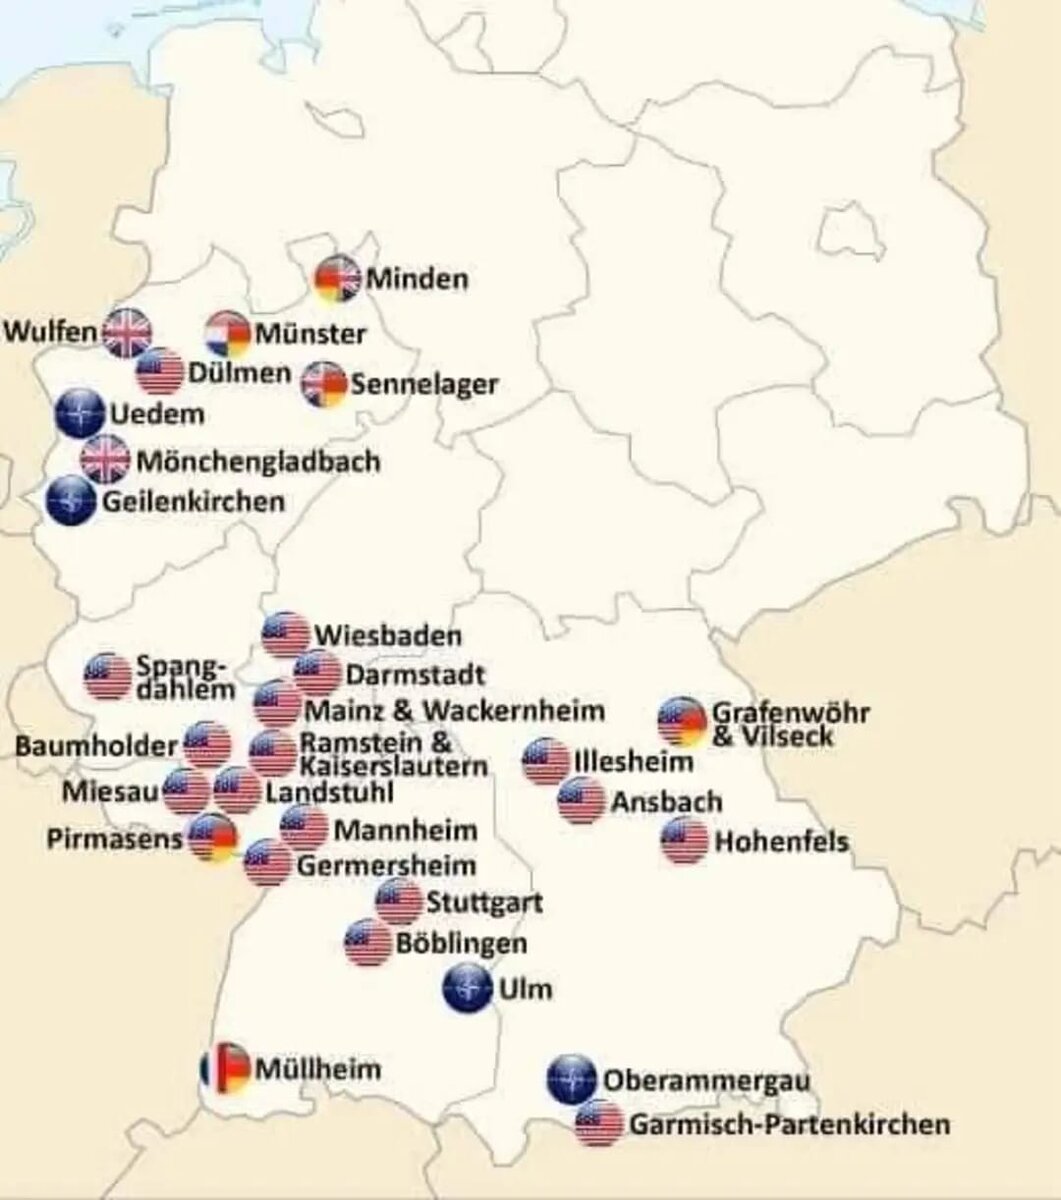 Иностранные войска на карте Германии